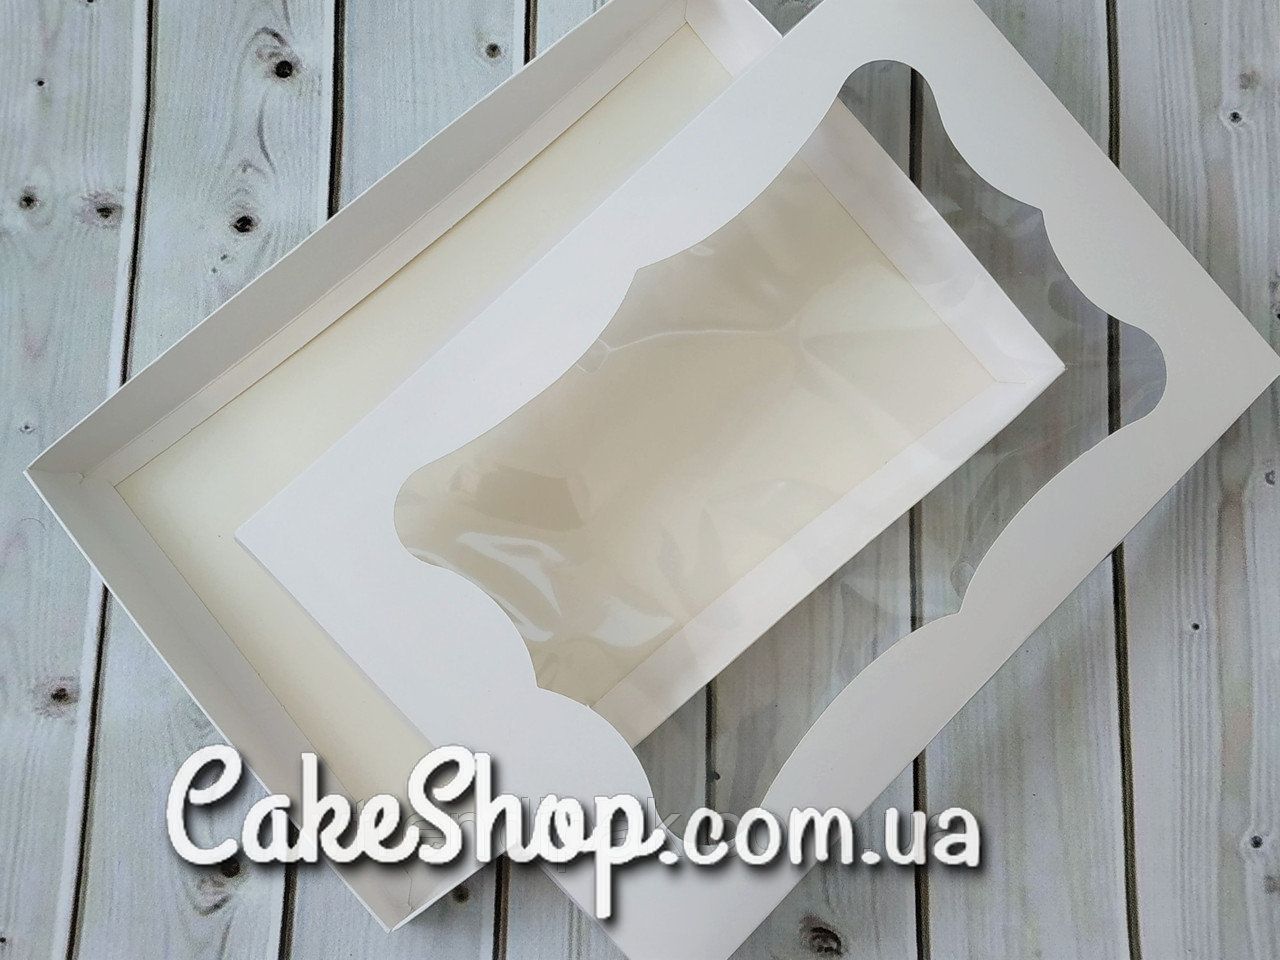 ⋗ Коробка для пряников прямоугольная с фигурным окном Белая, 30х20х3 см купить в Украине ➛ CakeShop.com.ua, фото